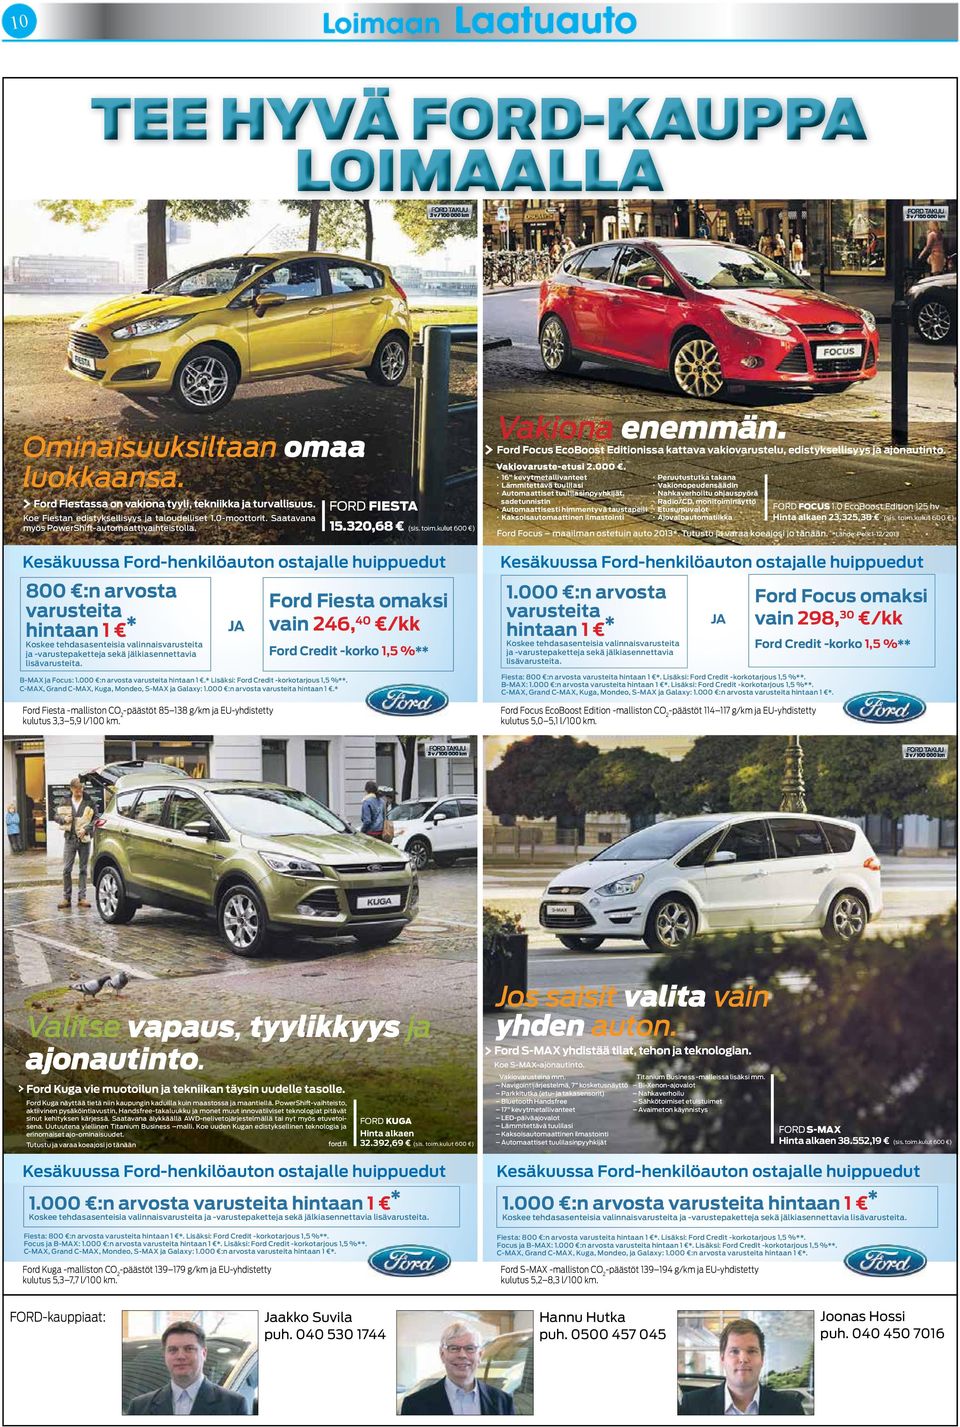 B-MAX ja Focus: 1.000 :n arvosta hintaan 1.* Lisäksi: Ford Credit -korkotarjous 1,5 %**. C-MAX, Grand C-MAX, Kuga, Mondeo, S-MAX ja Galaxy: 1.000 :n arvosta hintaan 1.* JA Ford Fiesta -malliston CO 2 -päästöt 85 138 g/km ja EU-yhdistetty kulutus 3,3 5,9 l/100 km.